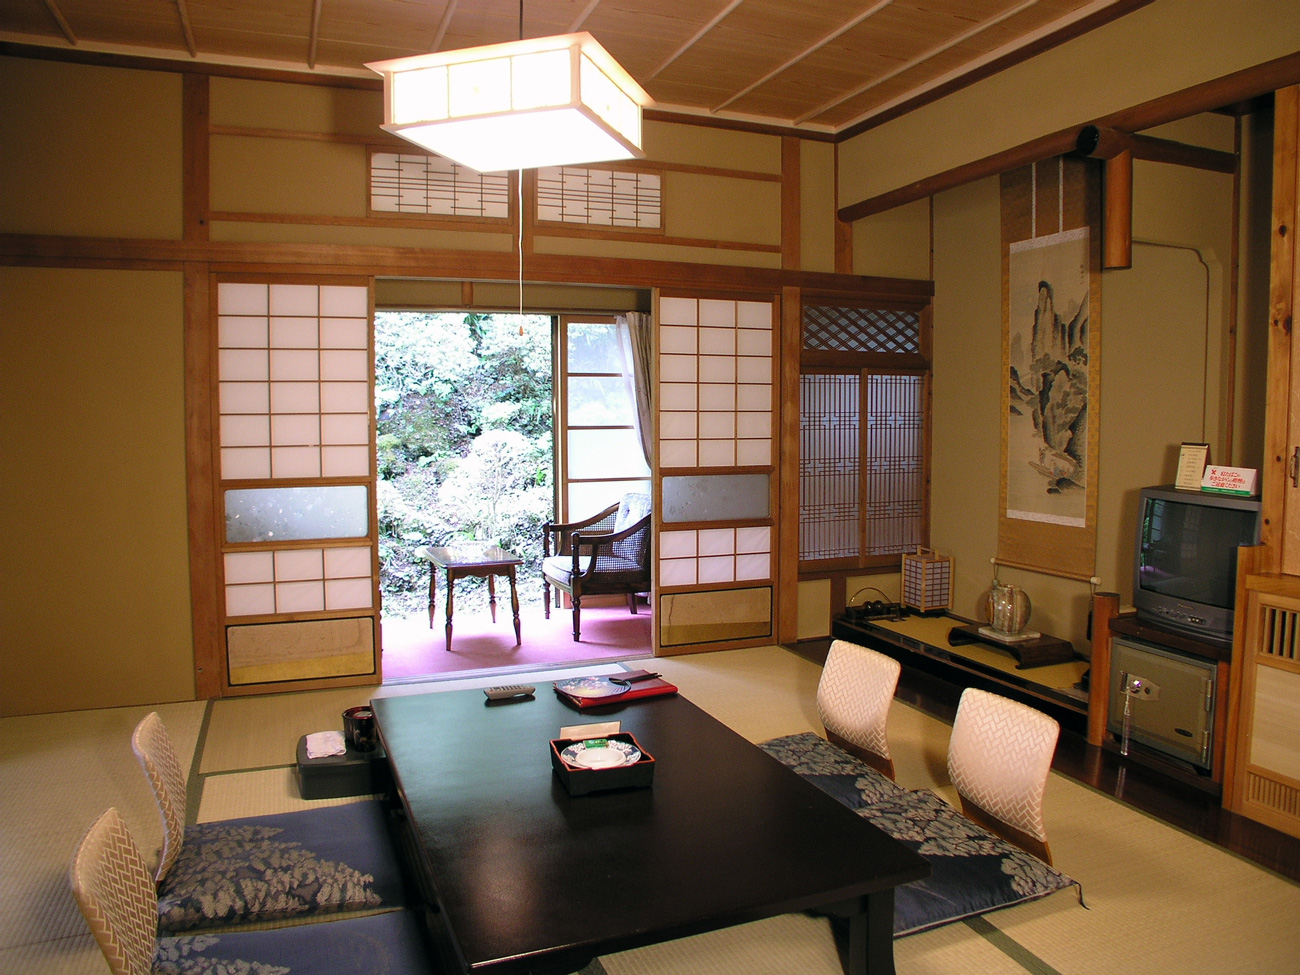 Interior Ala Jepang Memberikan Suasana Sederhana Dan Tenang Cerah